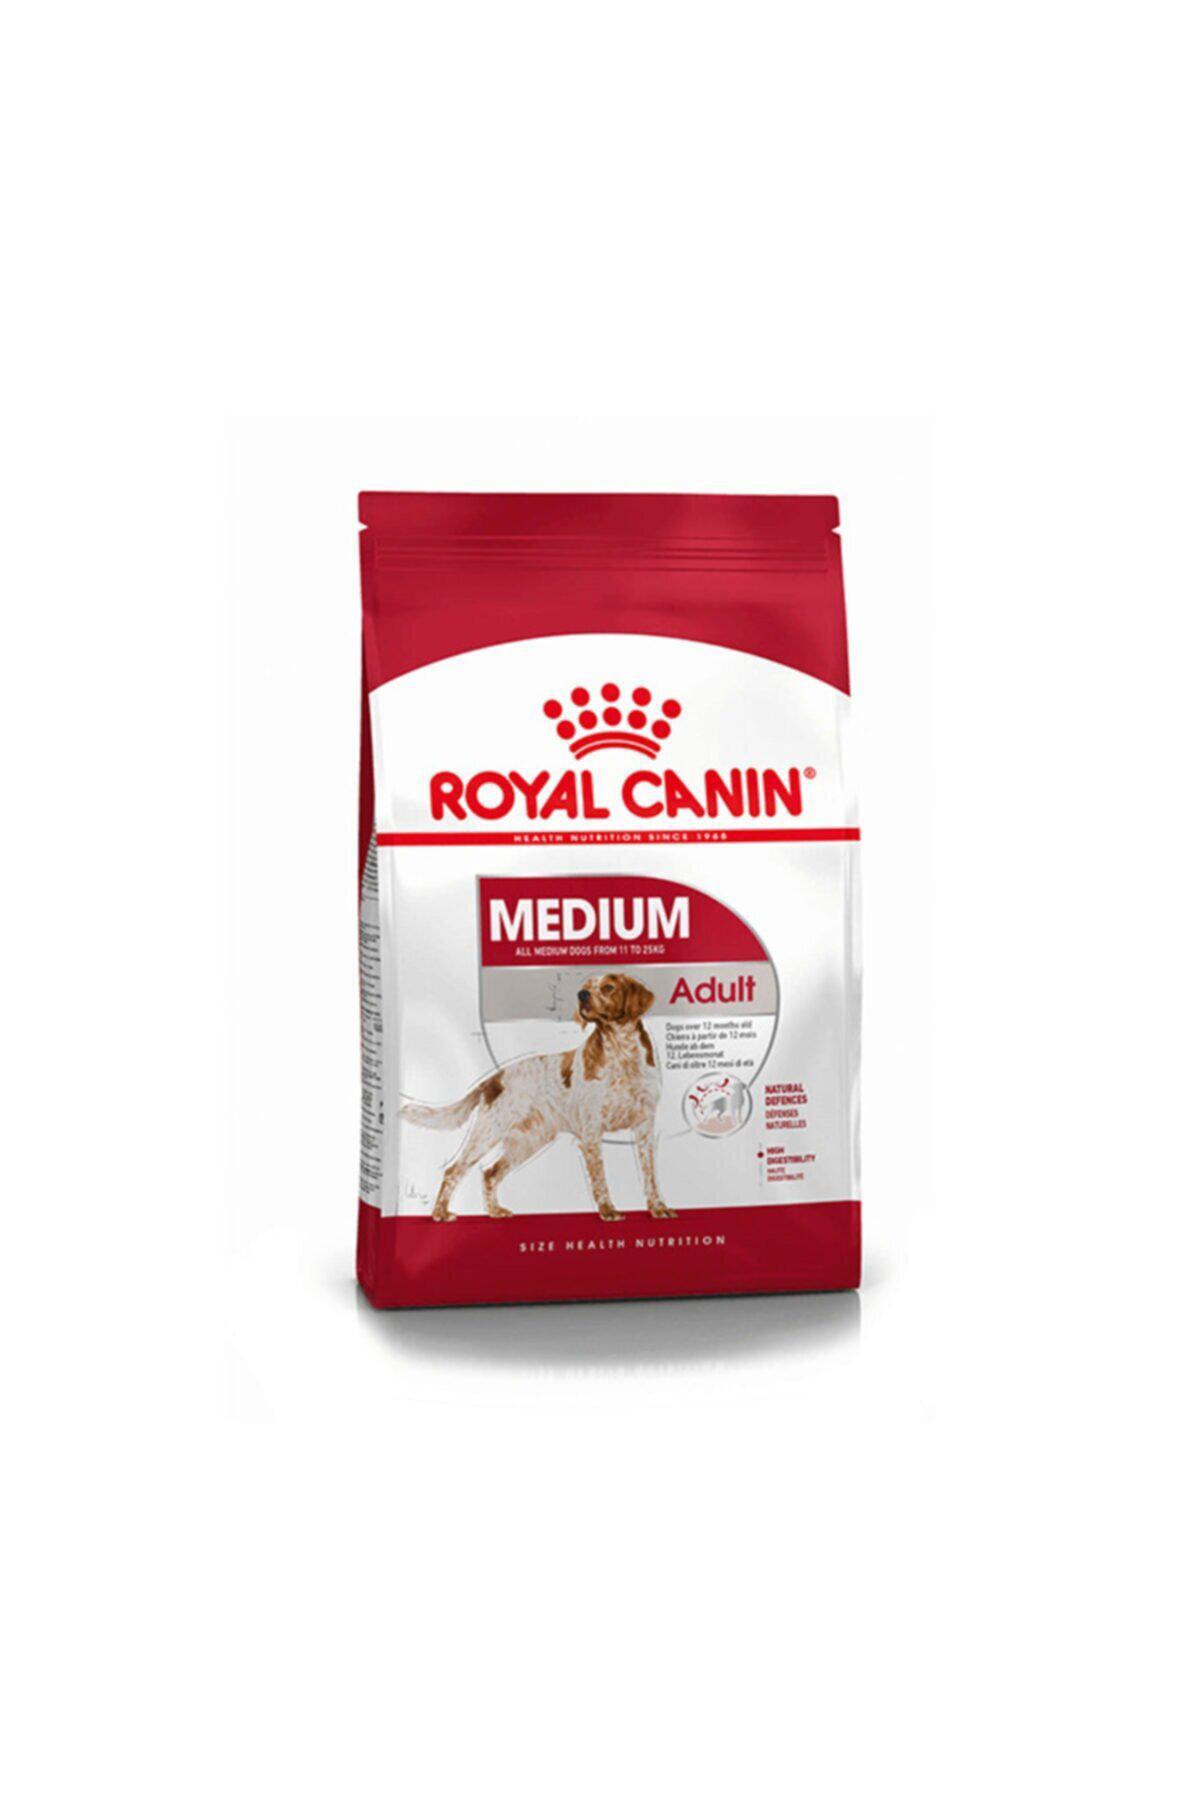 Royal Canin Size Health Nutrition Orta Irk Yetişkin Kuru Köpek Maması 15 kg